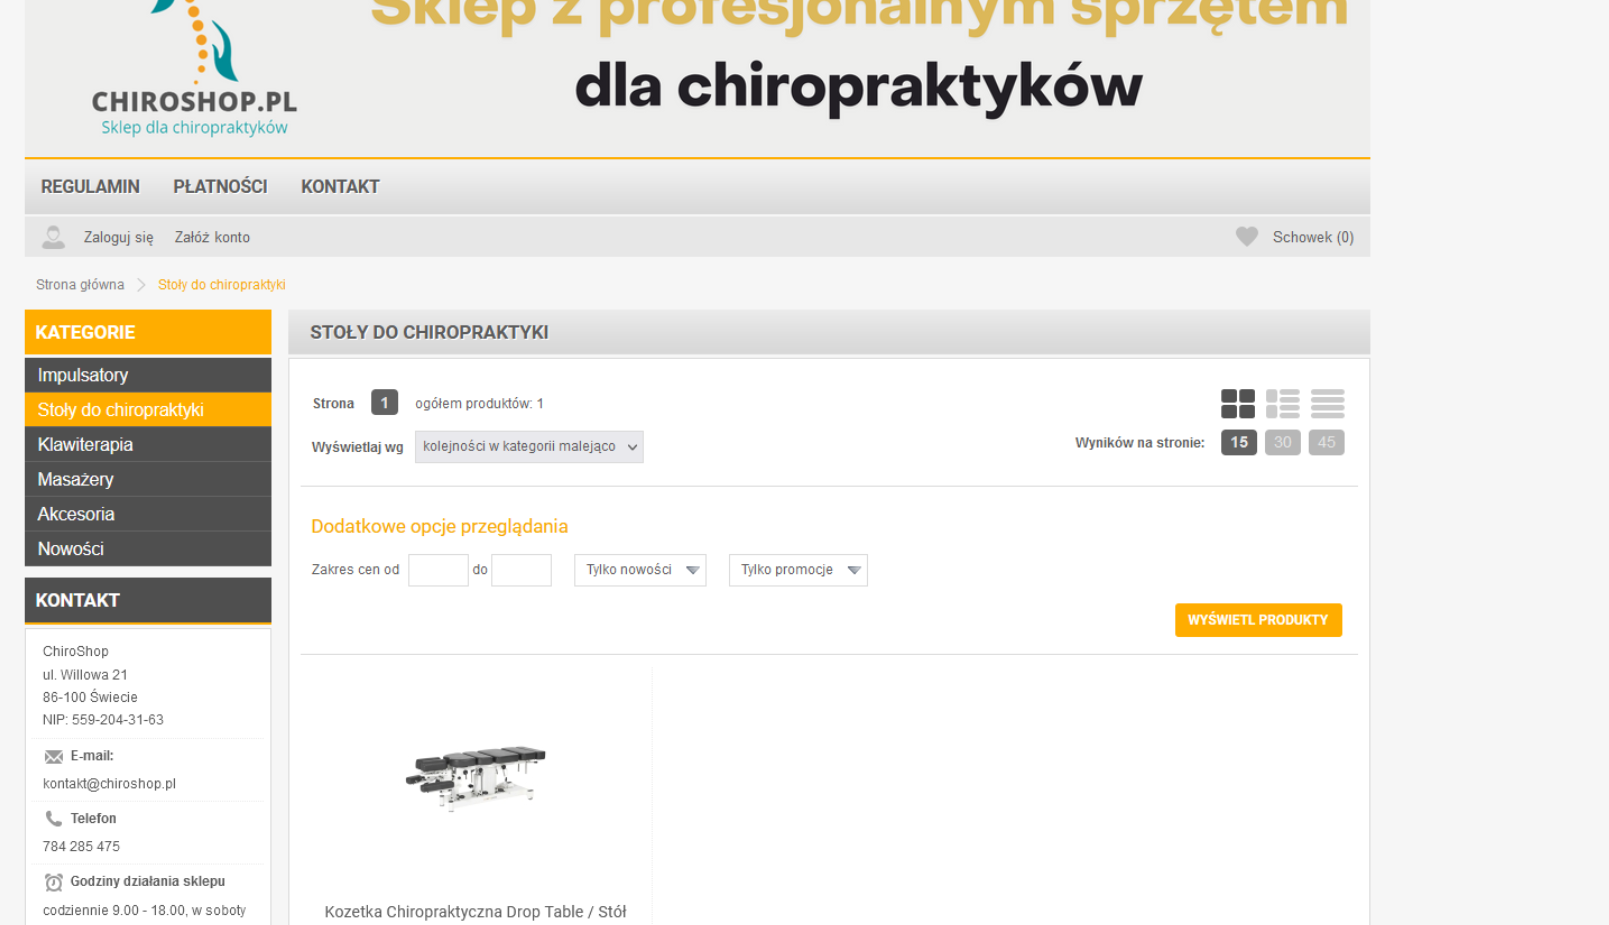 www.chiroshop.pl